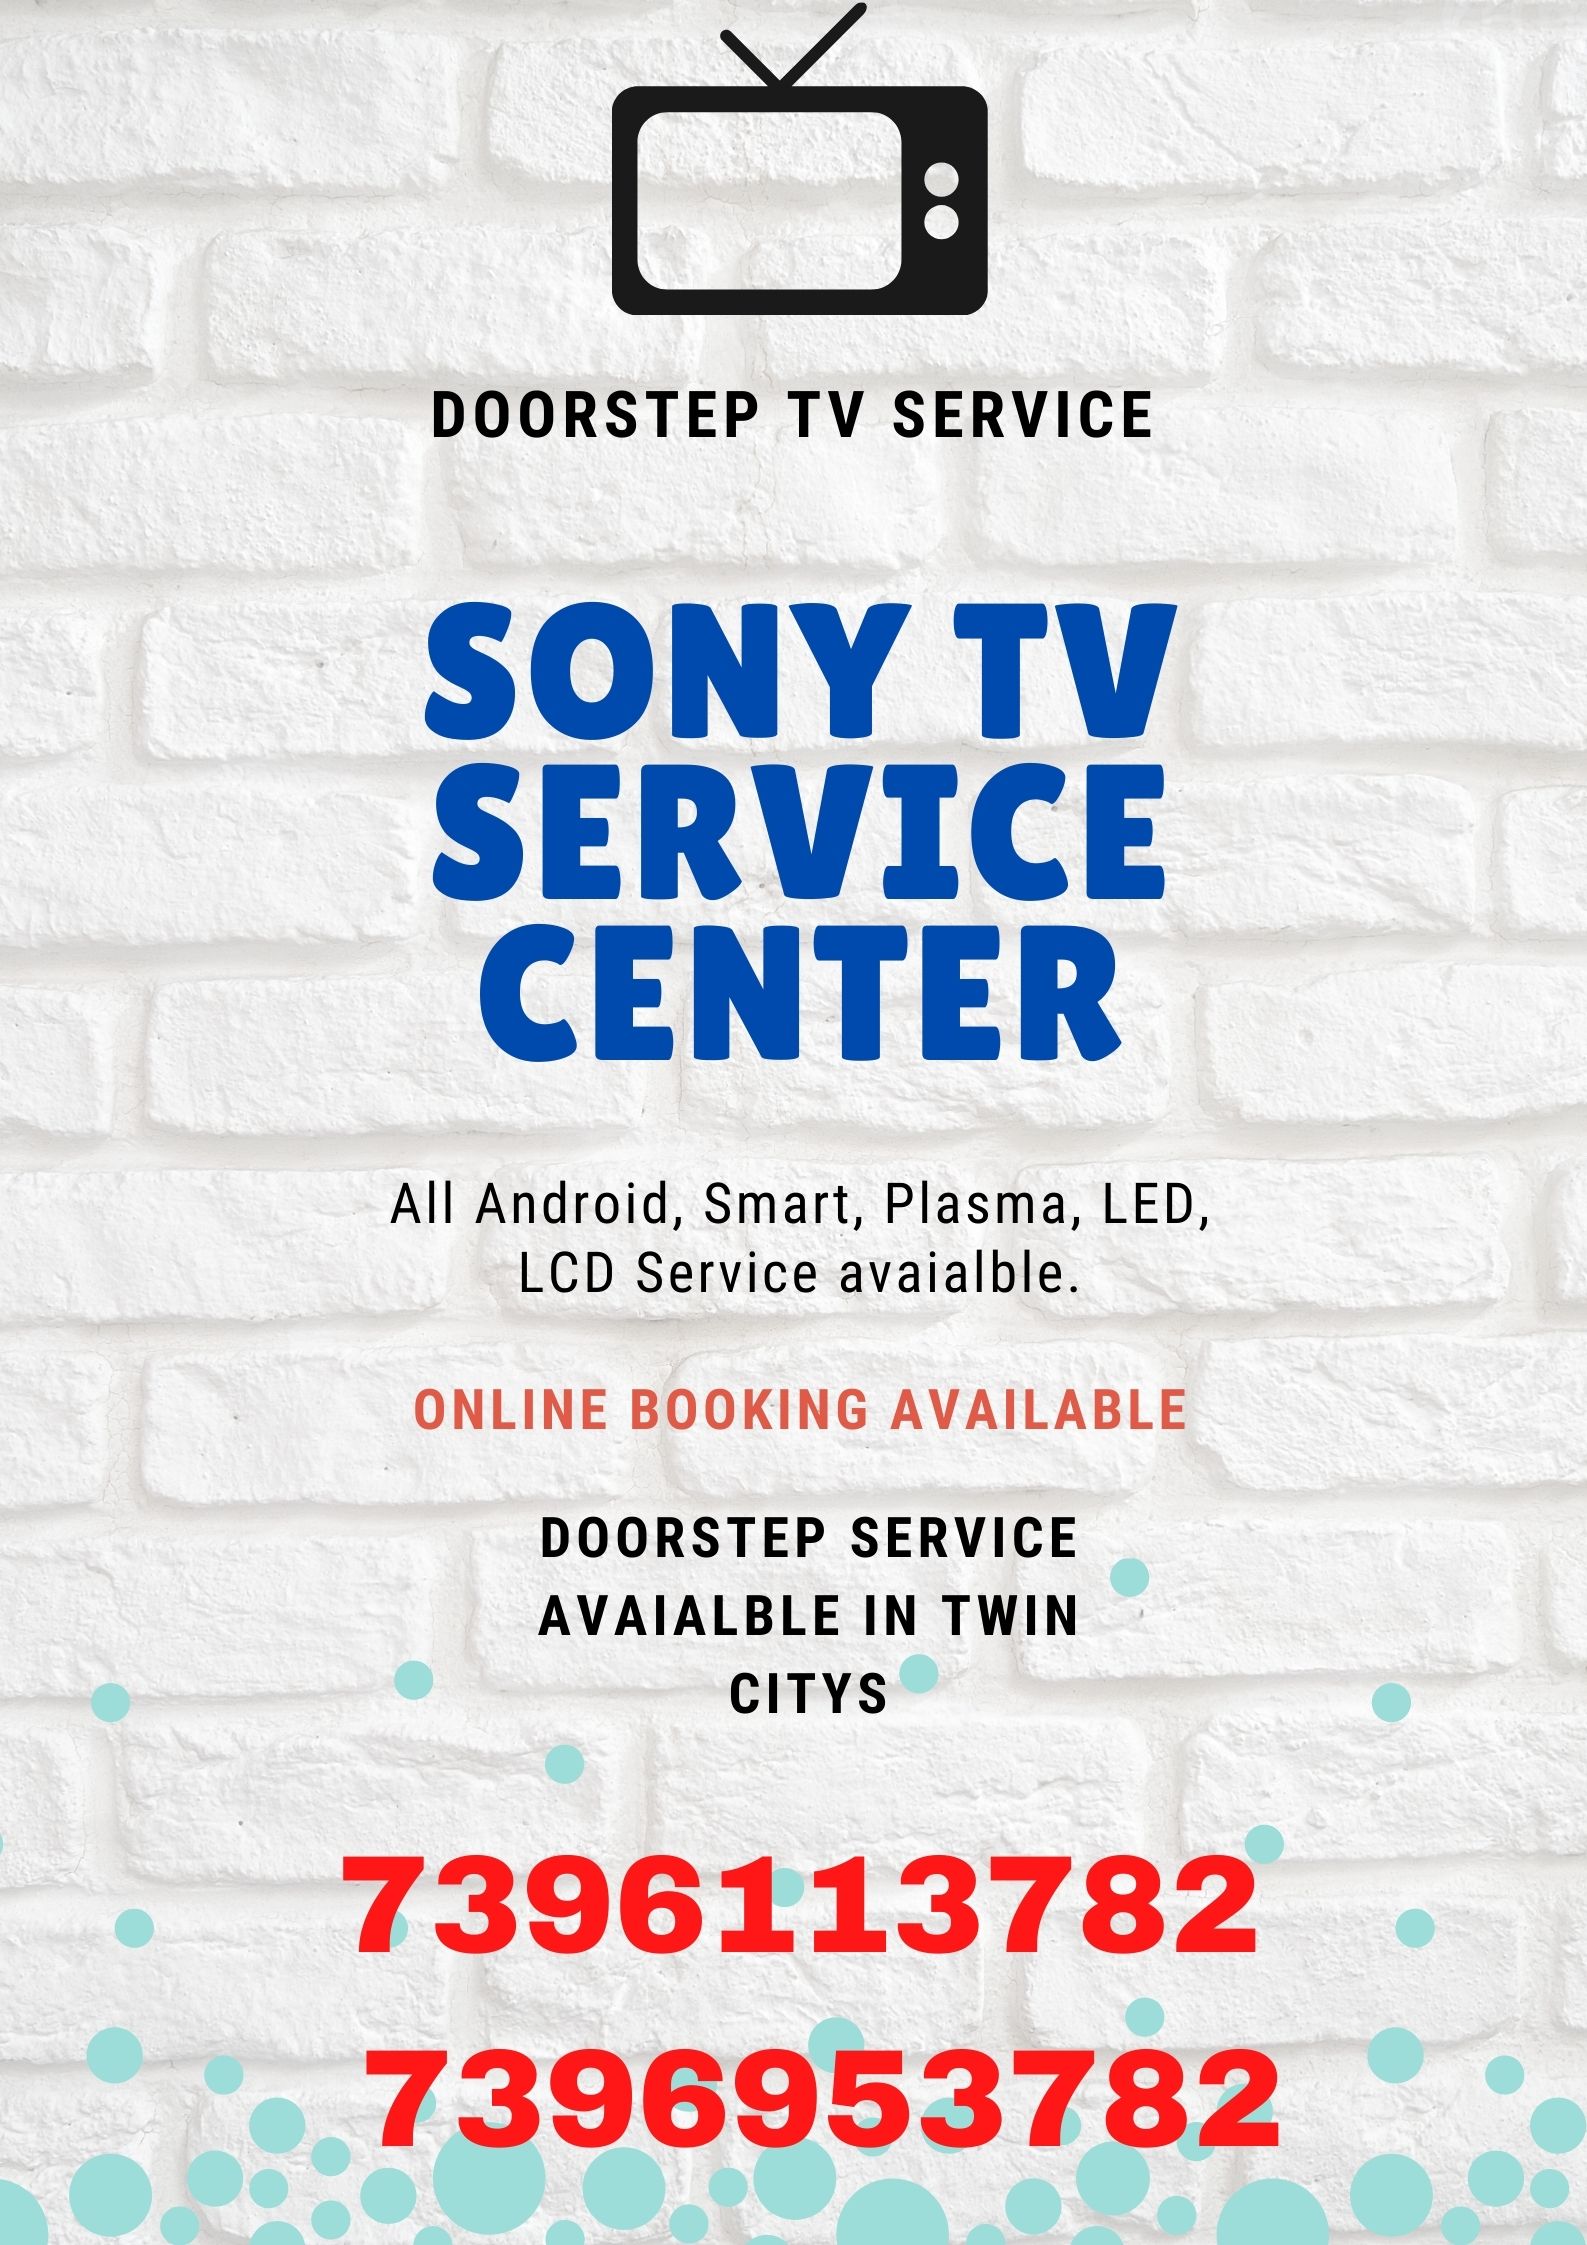 Bajaj Techno Service Center, Sony TV Service Center in Nizampet, Sony LED TV Service Center in Nizampet, Sony LCD TV Service Center in Nizampet, Sony Smart TV Service Center in Nizampet, Sony TV Service Center in Hyderabad